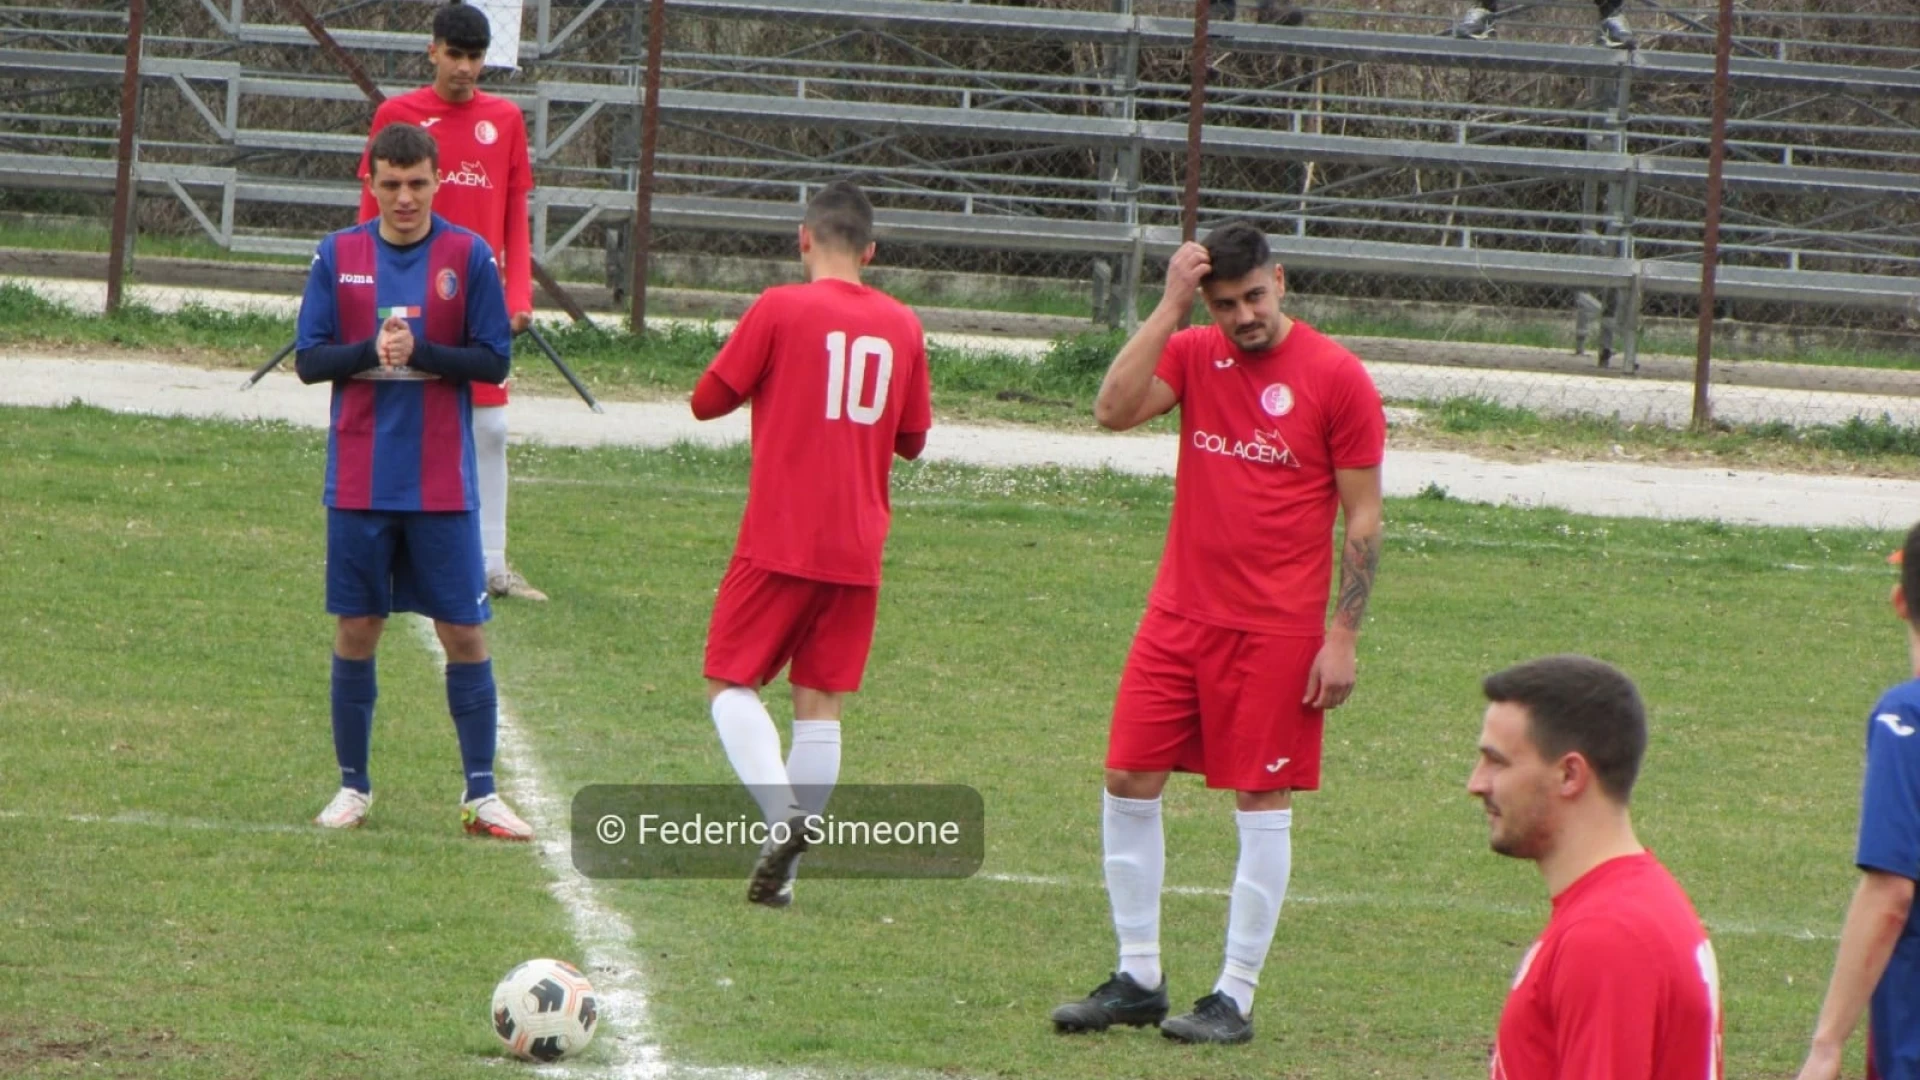 Eccellenza: Sesto Campano-Campodipietra 1-1. Tabellino e cronaca del match